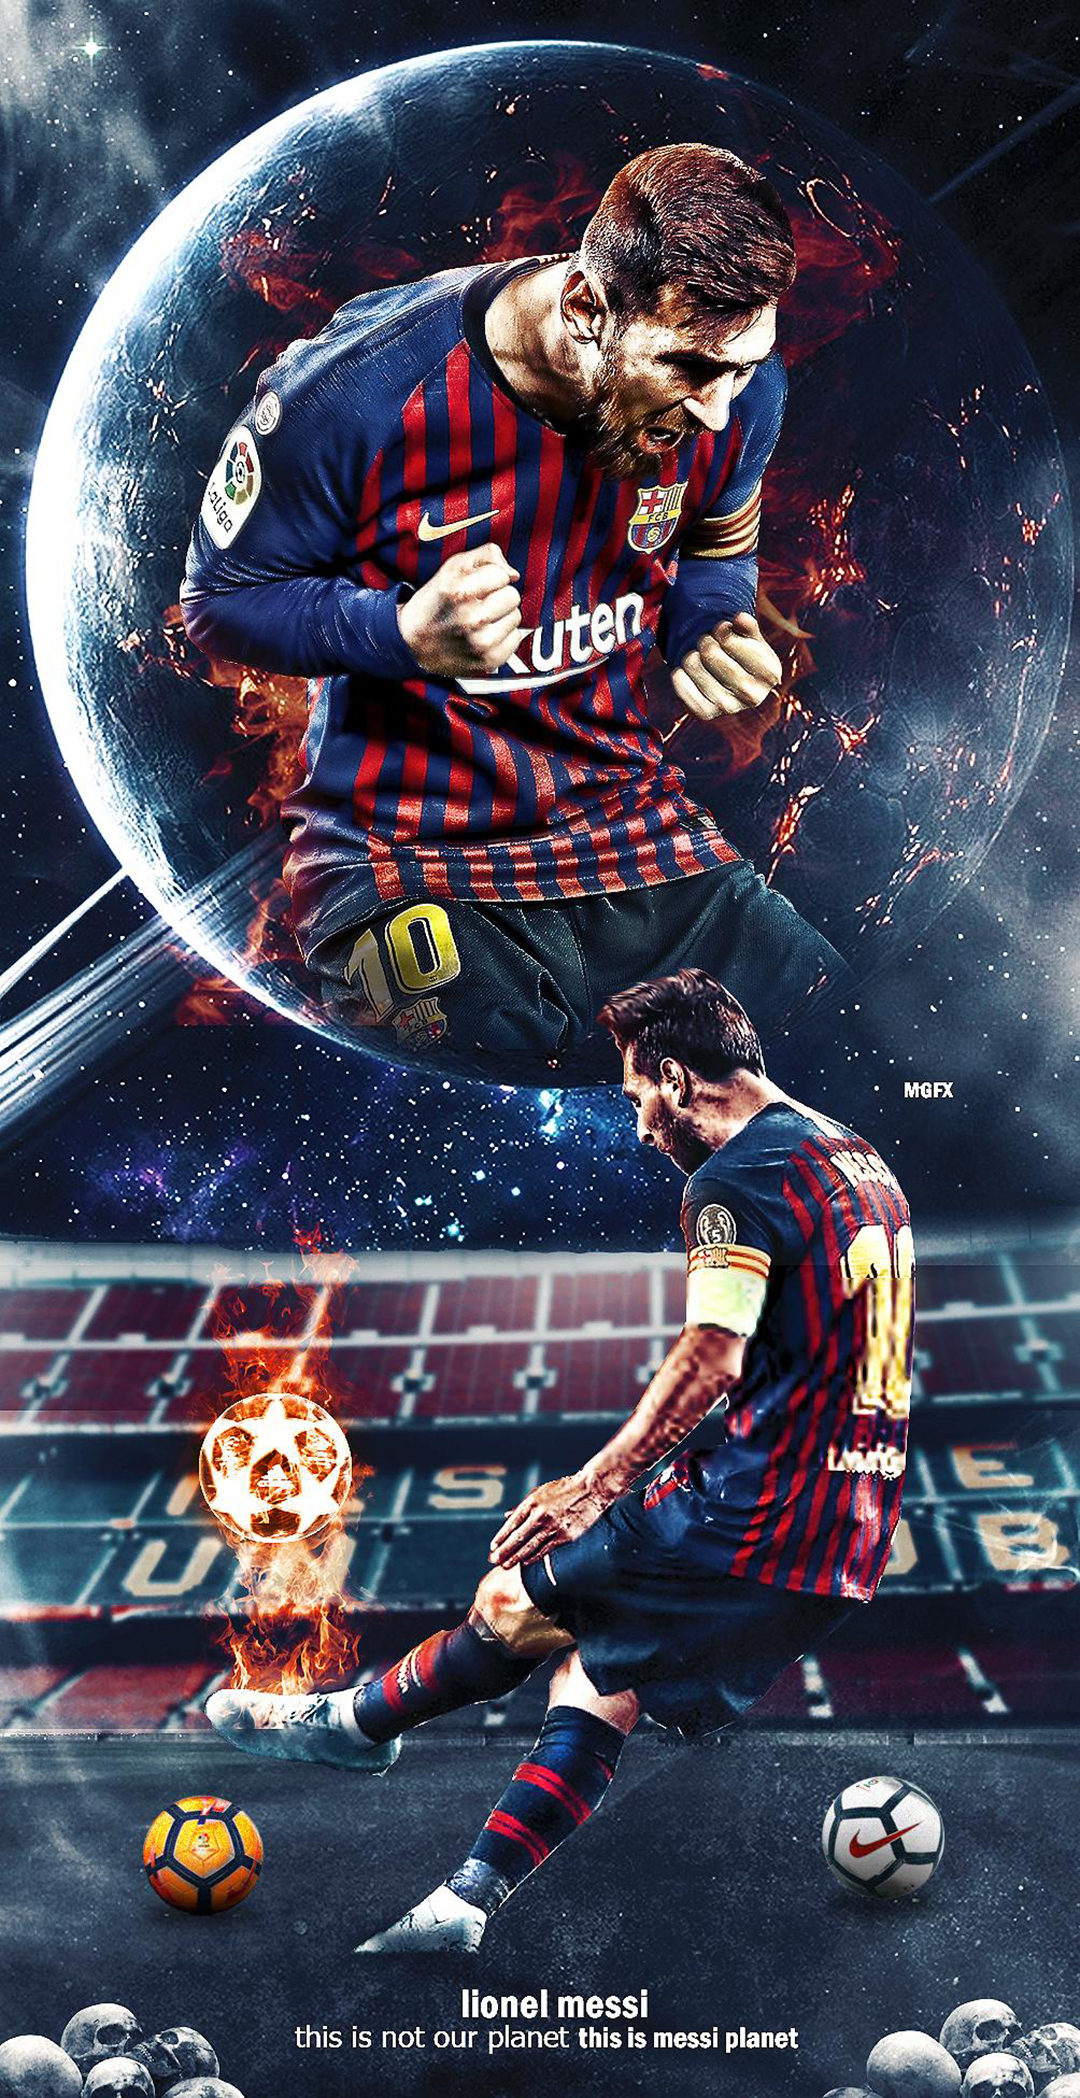 Nếu bạn là fan của Messi thì không thể bỏ qua bộ sưu tập các ảnh nền điện thoại của anh ta. Được ví là một trong những cầu thủ vĩ đại nhất trong lịch sử bóng đá, Messi không chỉ là một trong những thần tượng của người hâm mộ mà còn là một nguồn cảm hứng cho những người yêu thích bóng đá. Hãy tải ngay những ảnh nền điện thoại Messi để cảm nhận sự vĩ đại của anh ta.